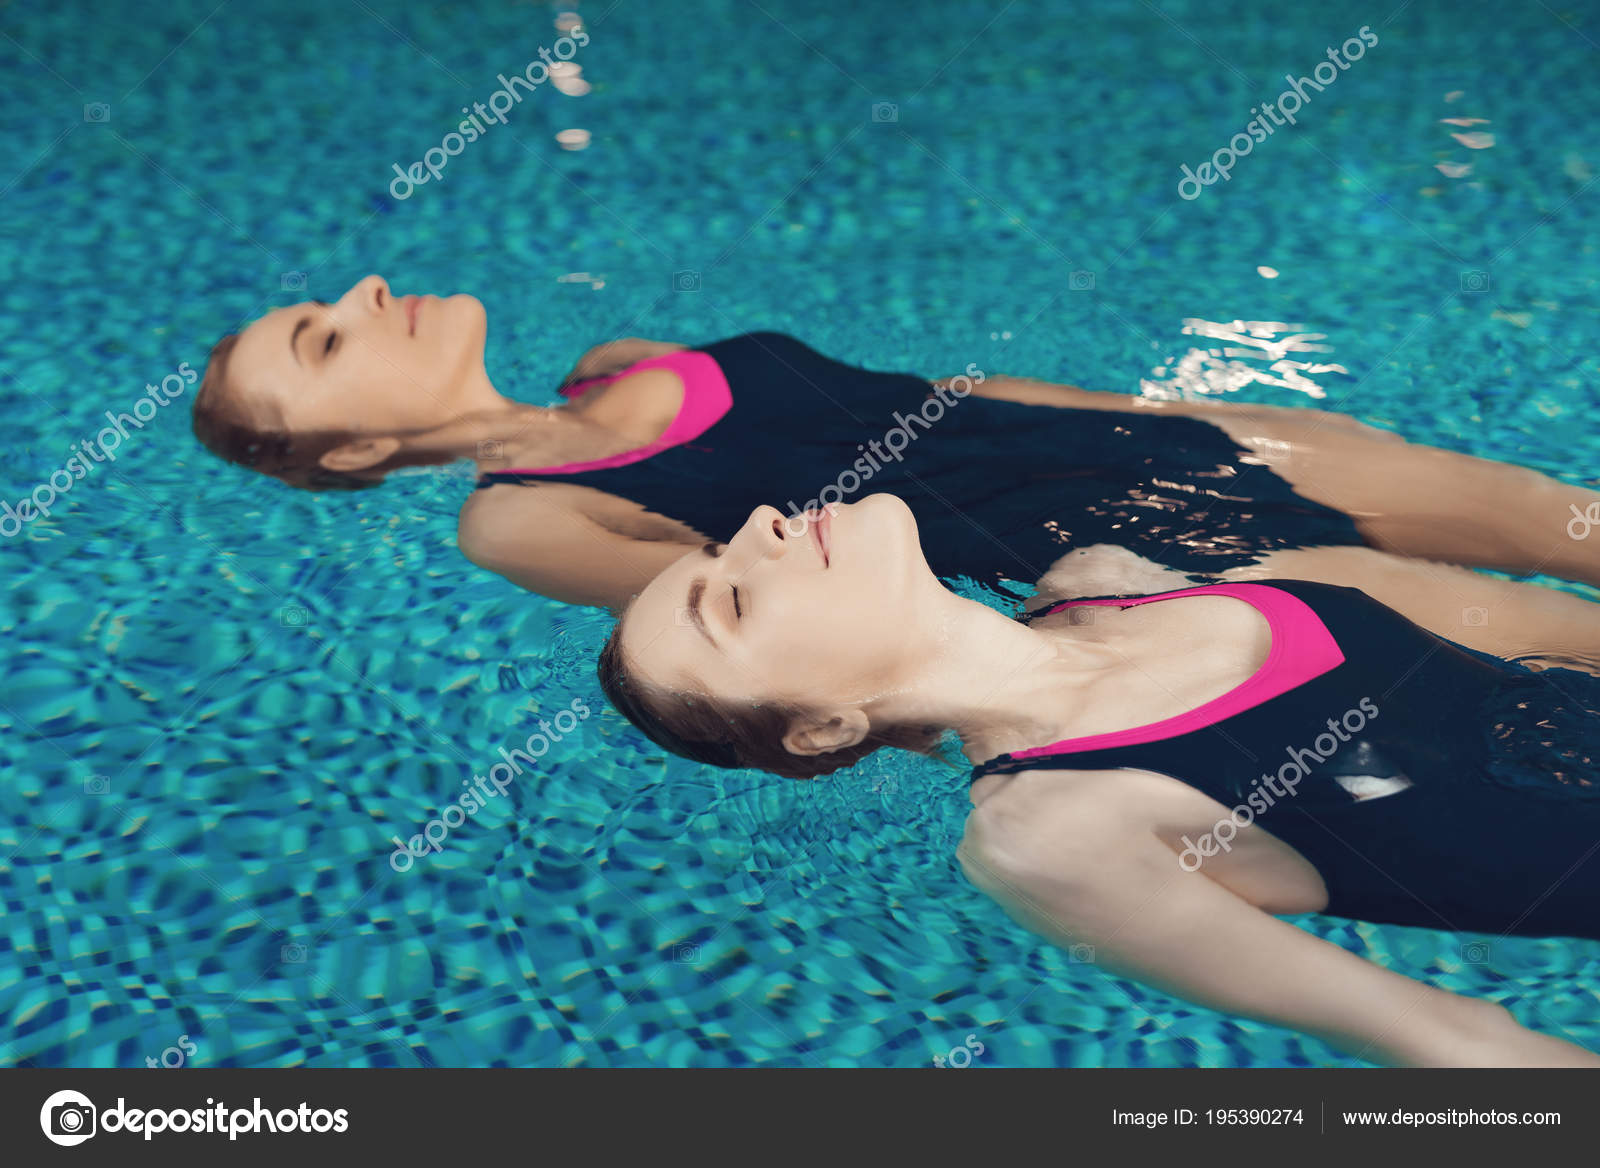 ジムのプールで泳ぐ水着で母と娘 — ストック写真 © Freeograph 195390274